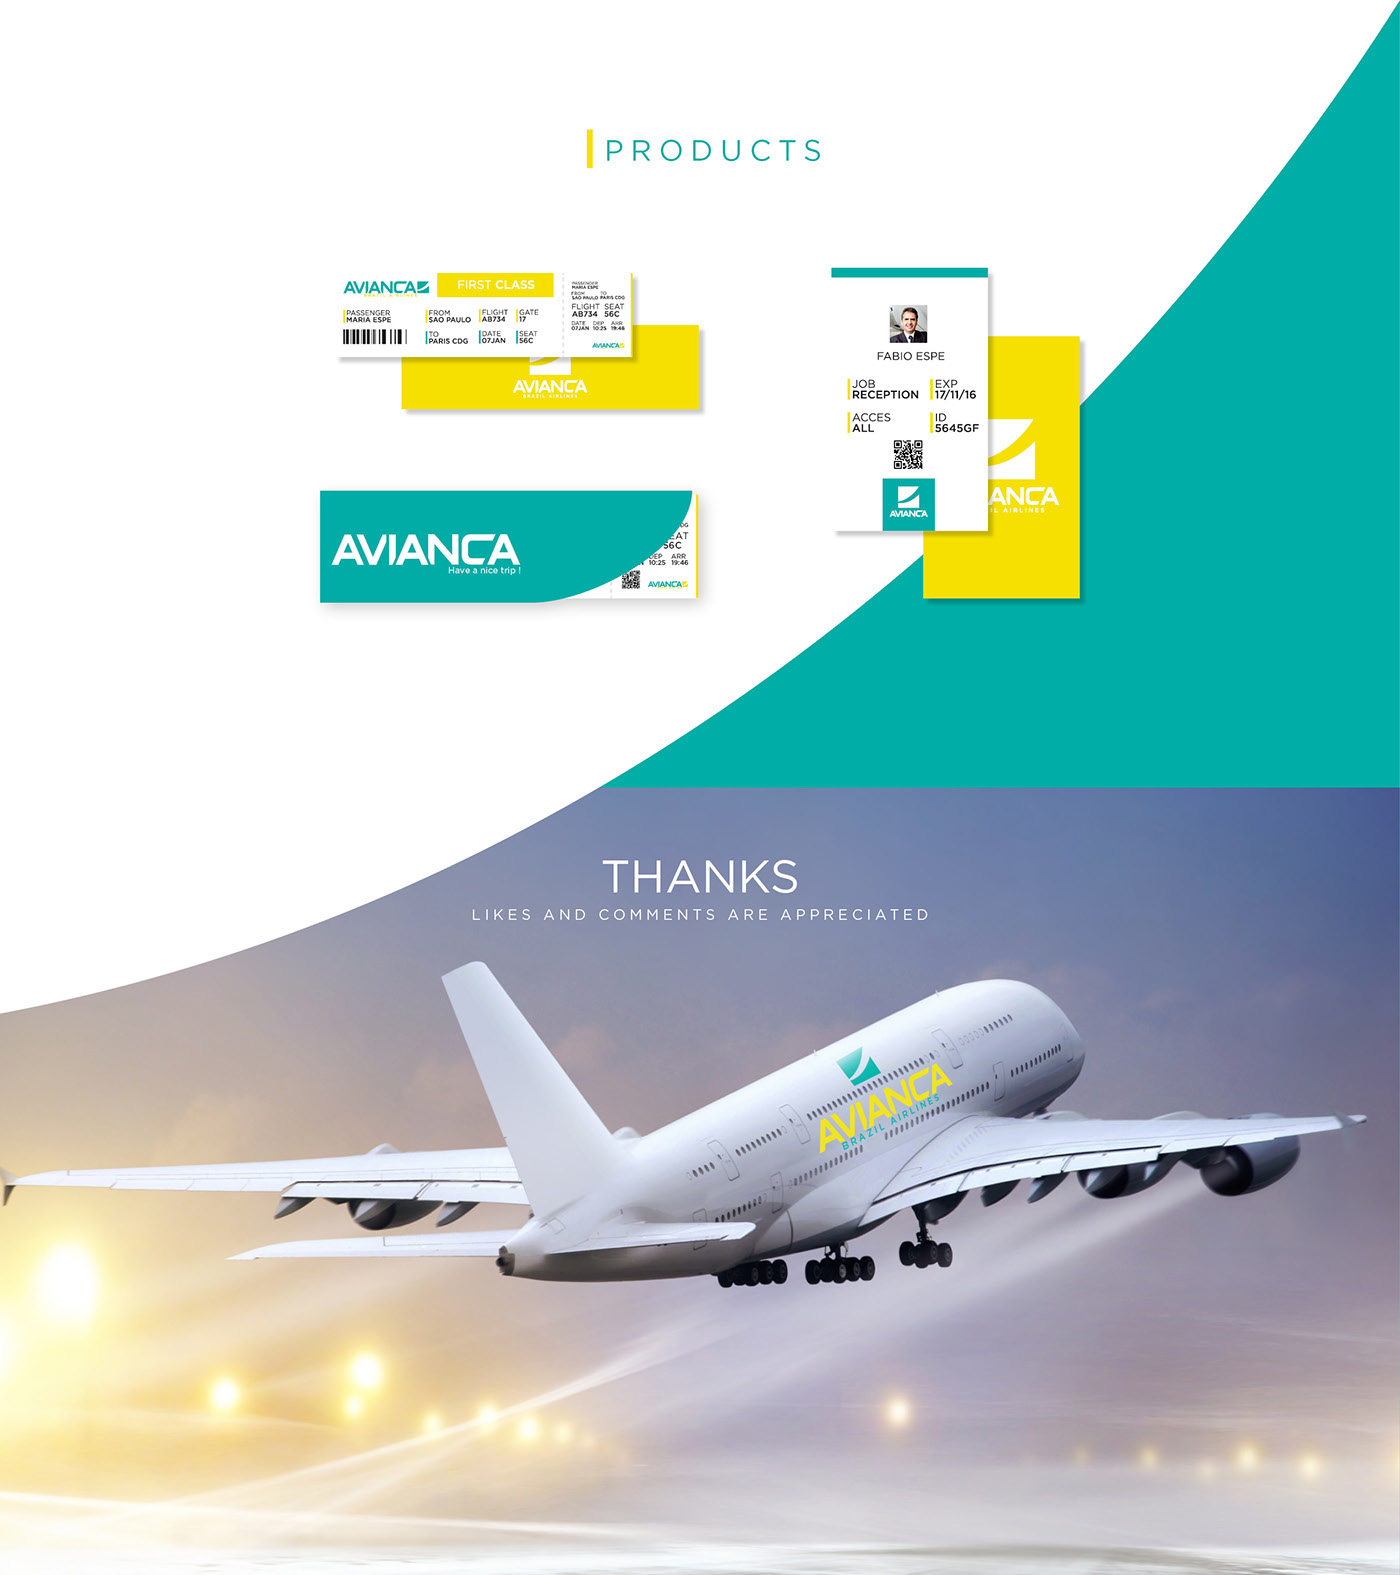 Avianca Brazil Airlines Avianca Brazil Airlines brazil airlines brand branding  Fly plane Travel